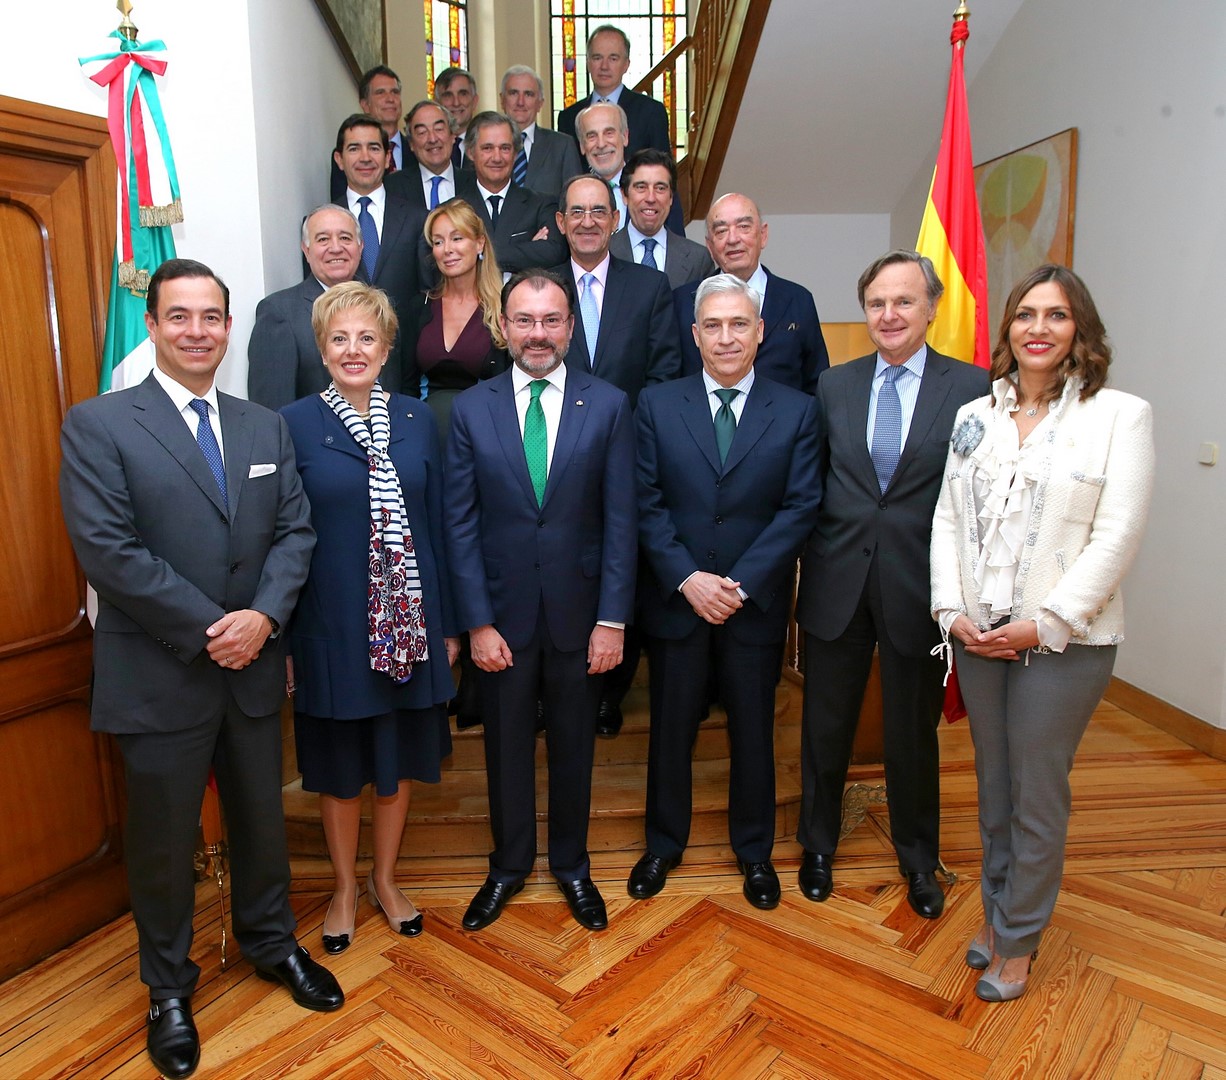 El Canciller Luis Videgaray en reunión con empresarios en la residencia de la embajadora. (SRE)